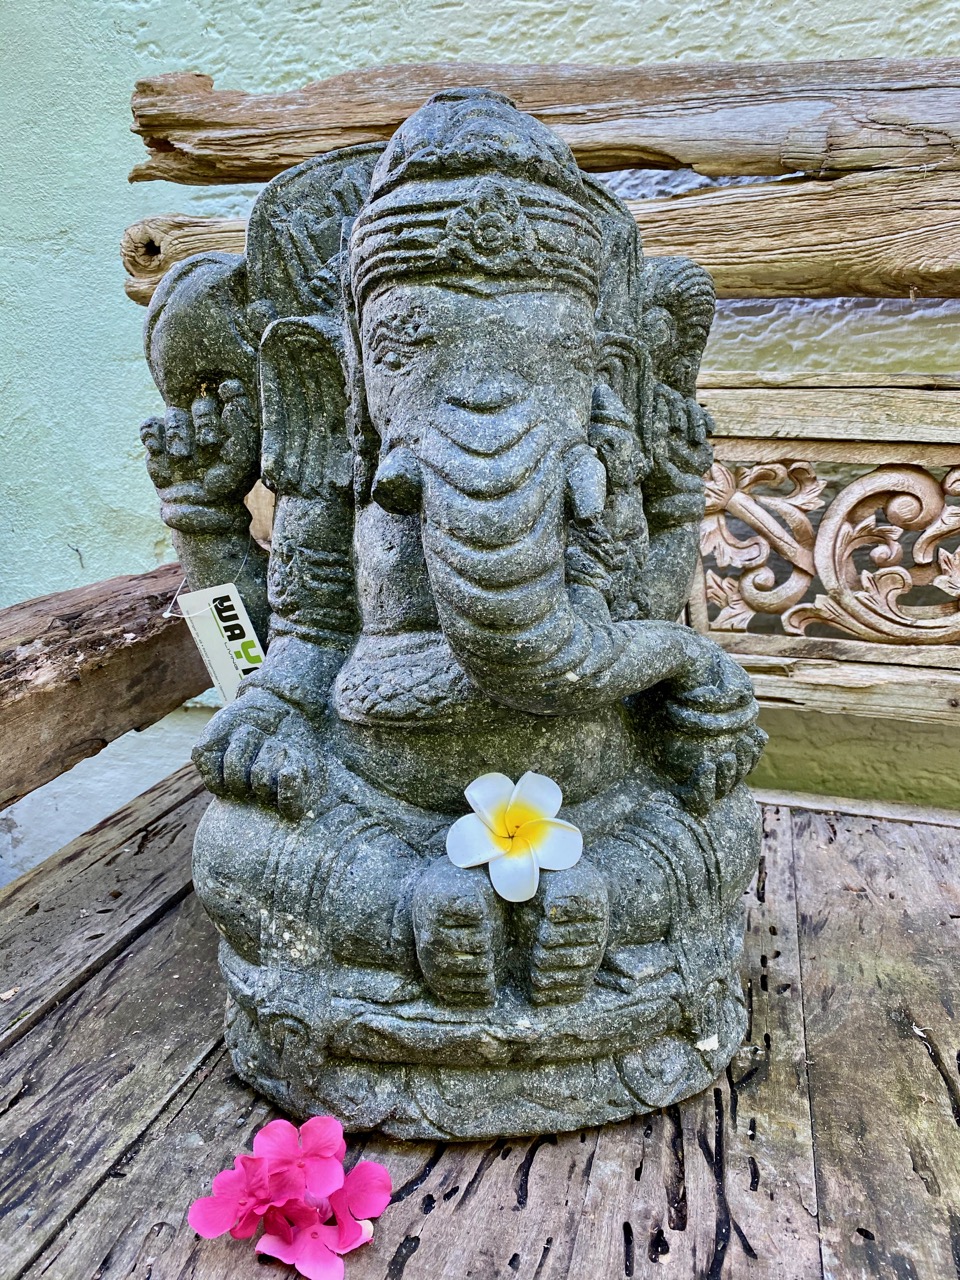 Elefantengott Ganesha sorgt für Glück und Erfolg